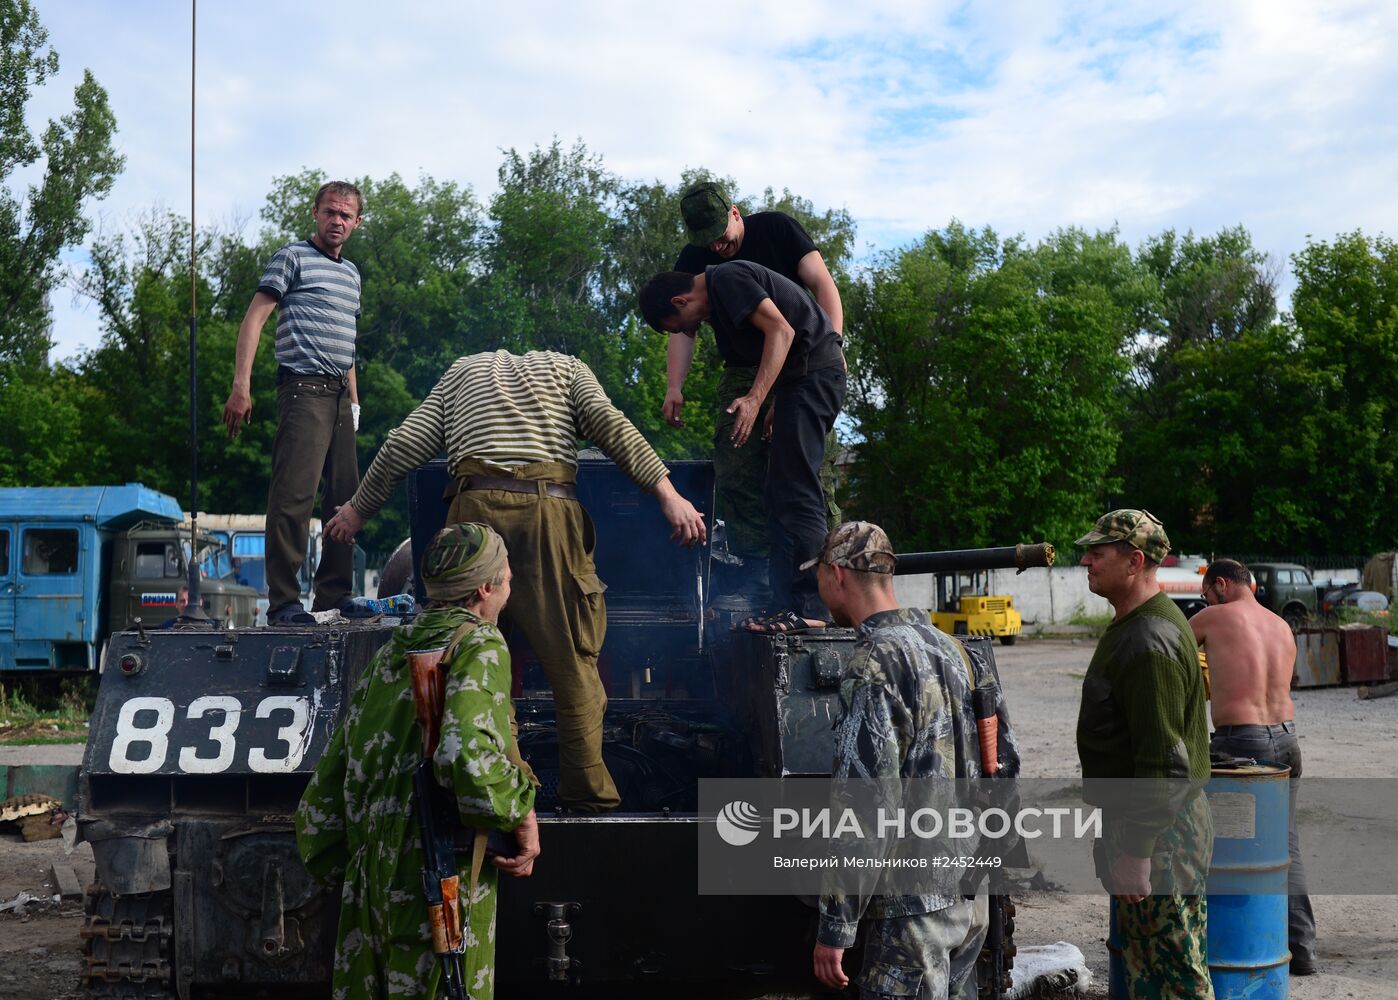 Батальон "Призрак" народного ополчения Луганска